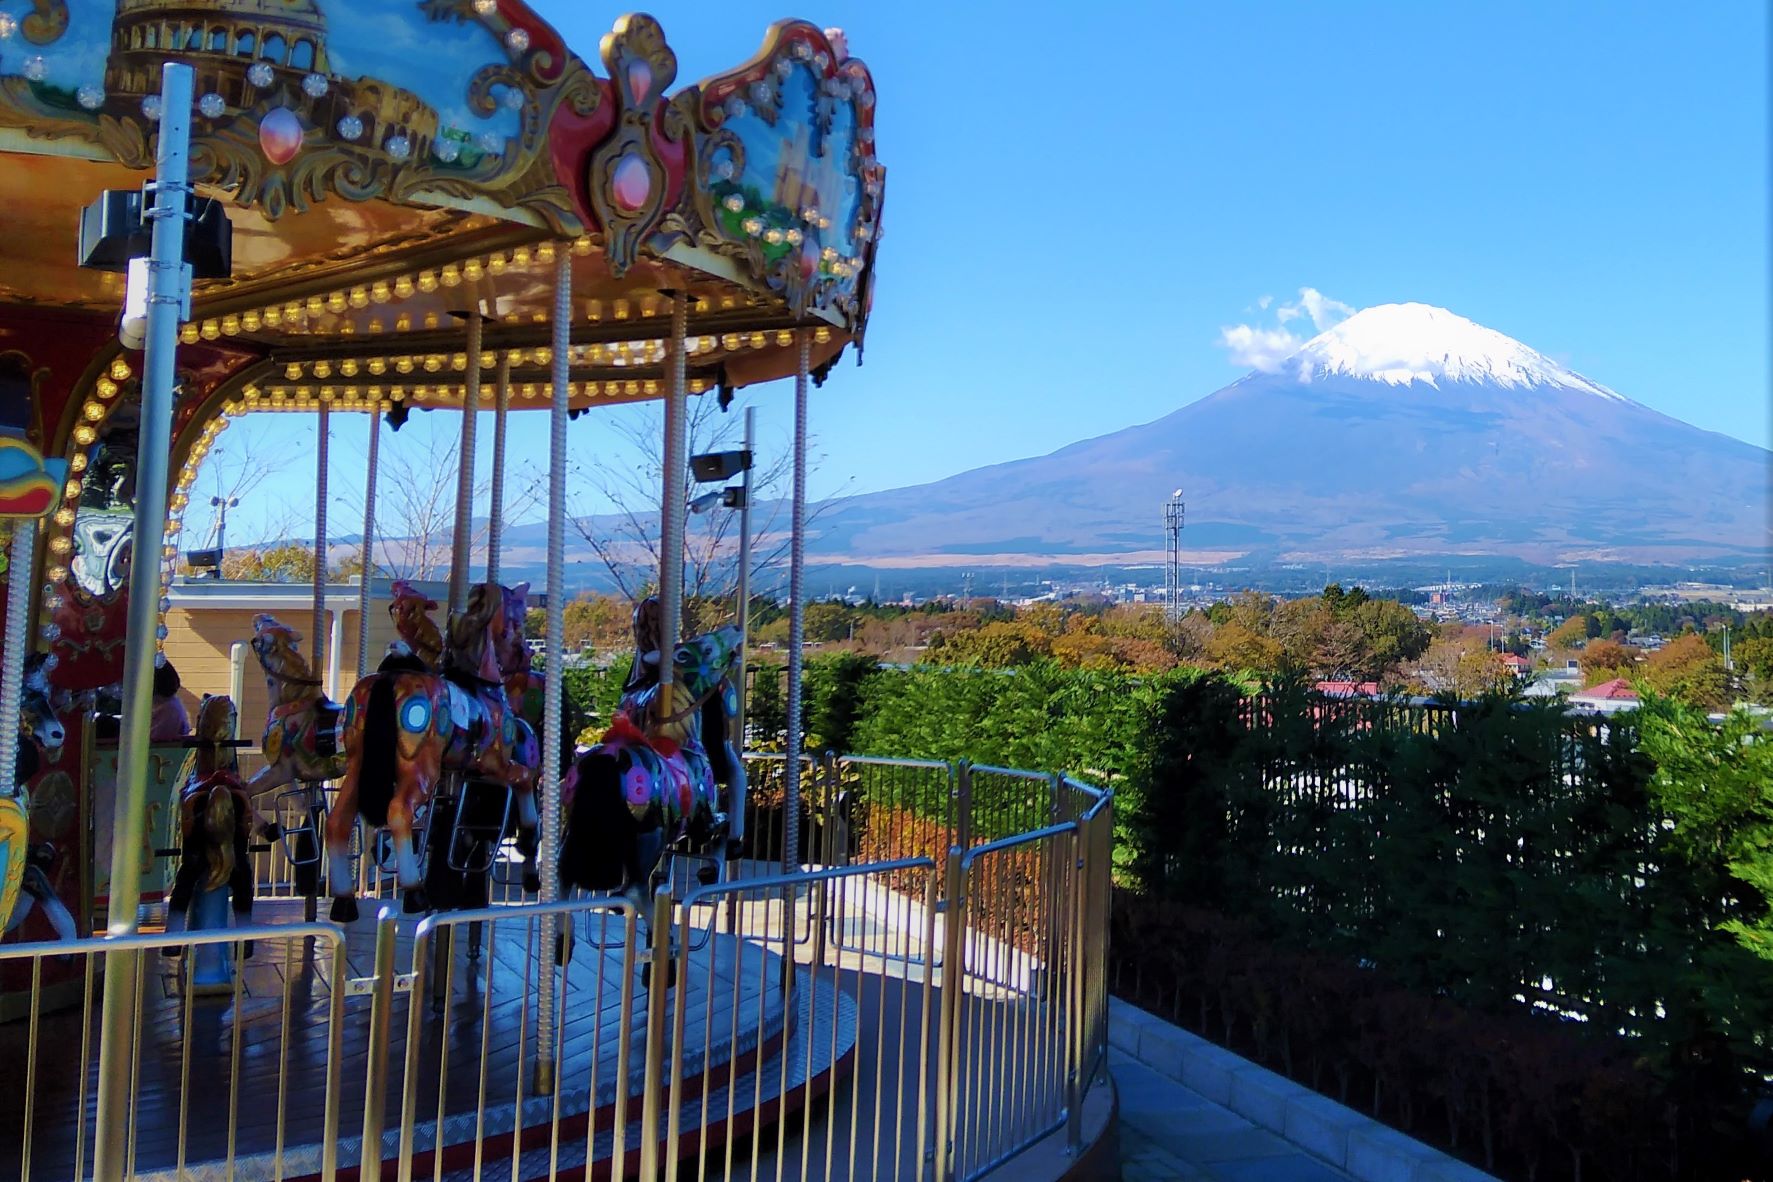 Carousel and Mt. Fuji